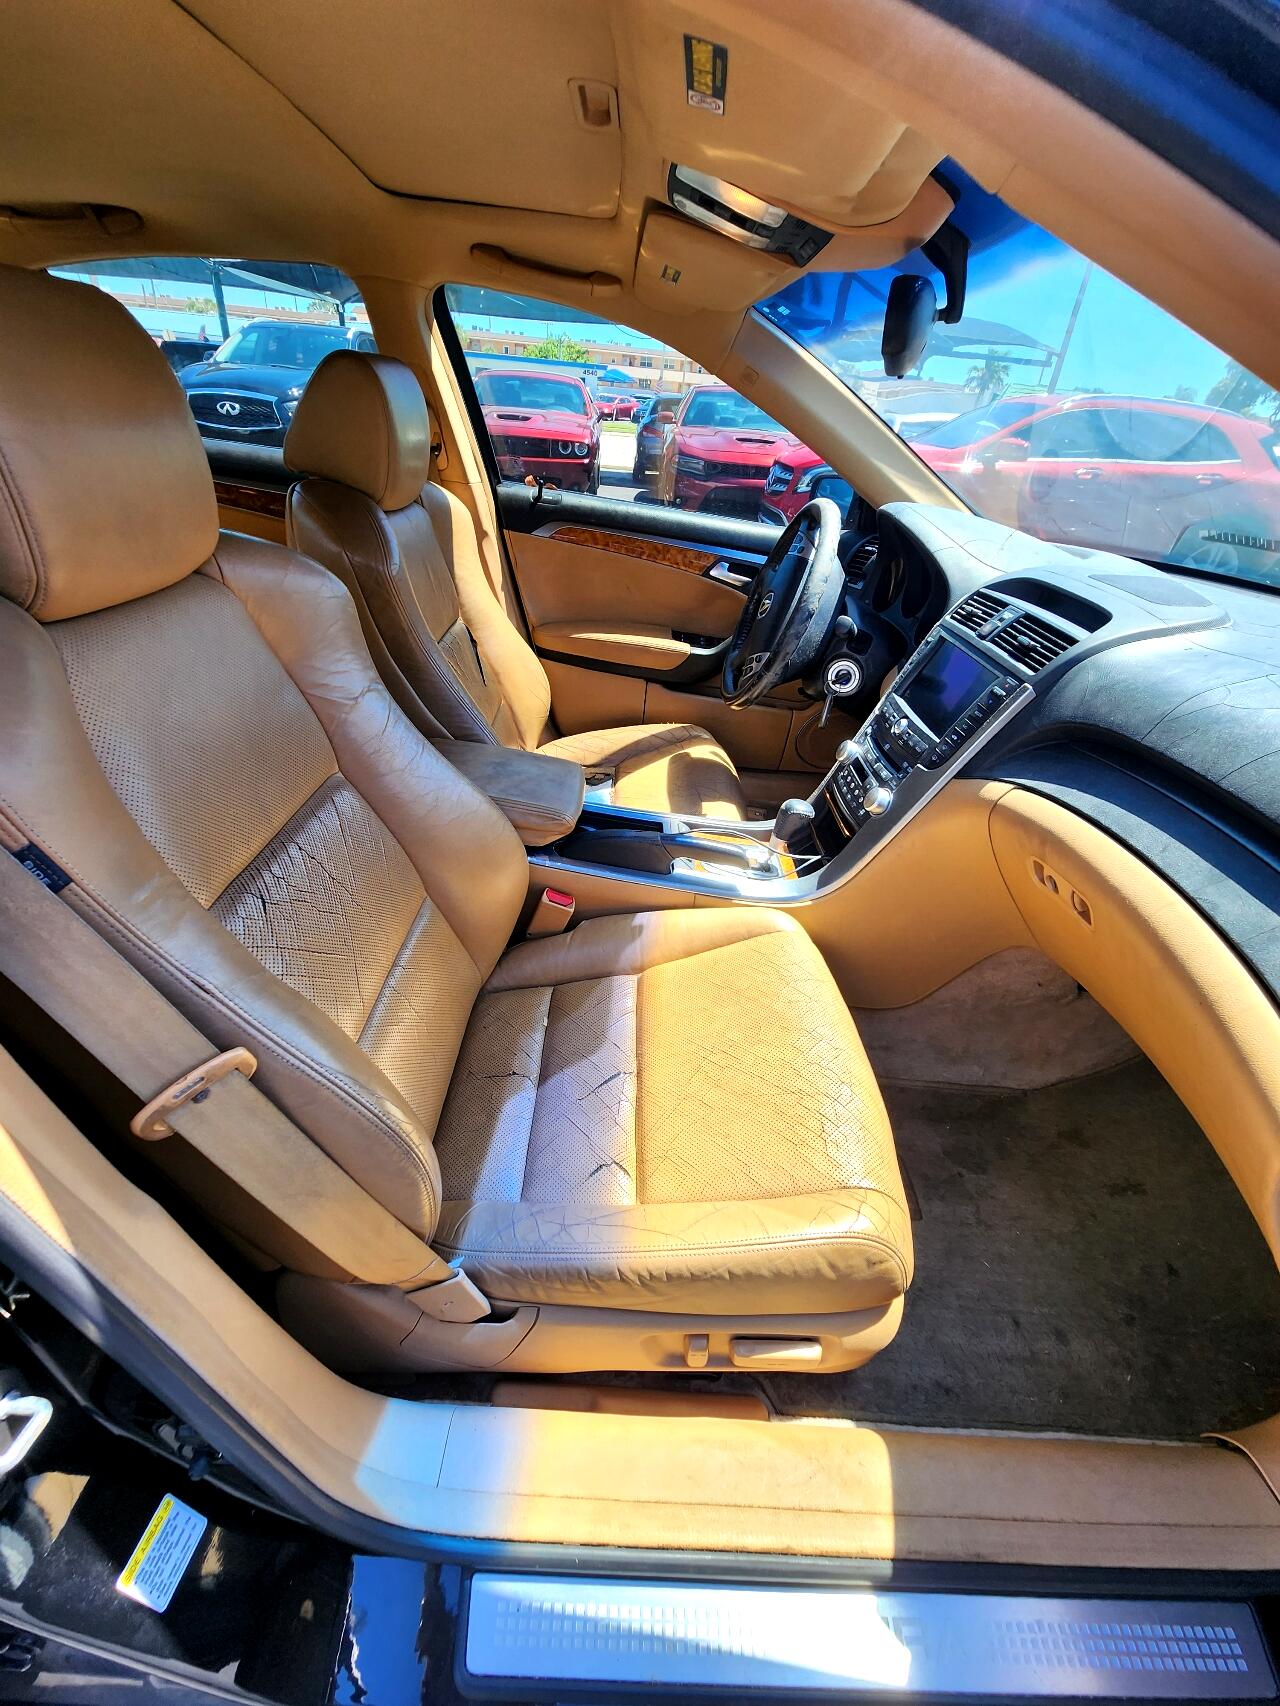 2006 ACURA TL Sedan - $2,499